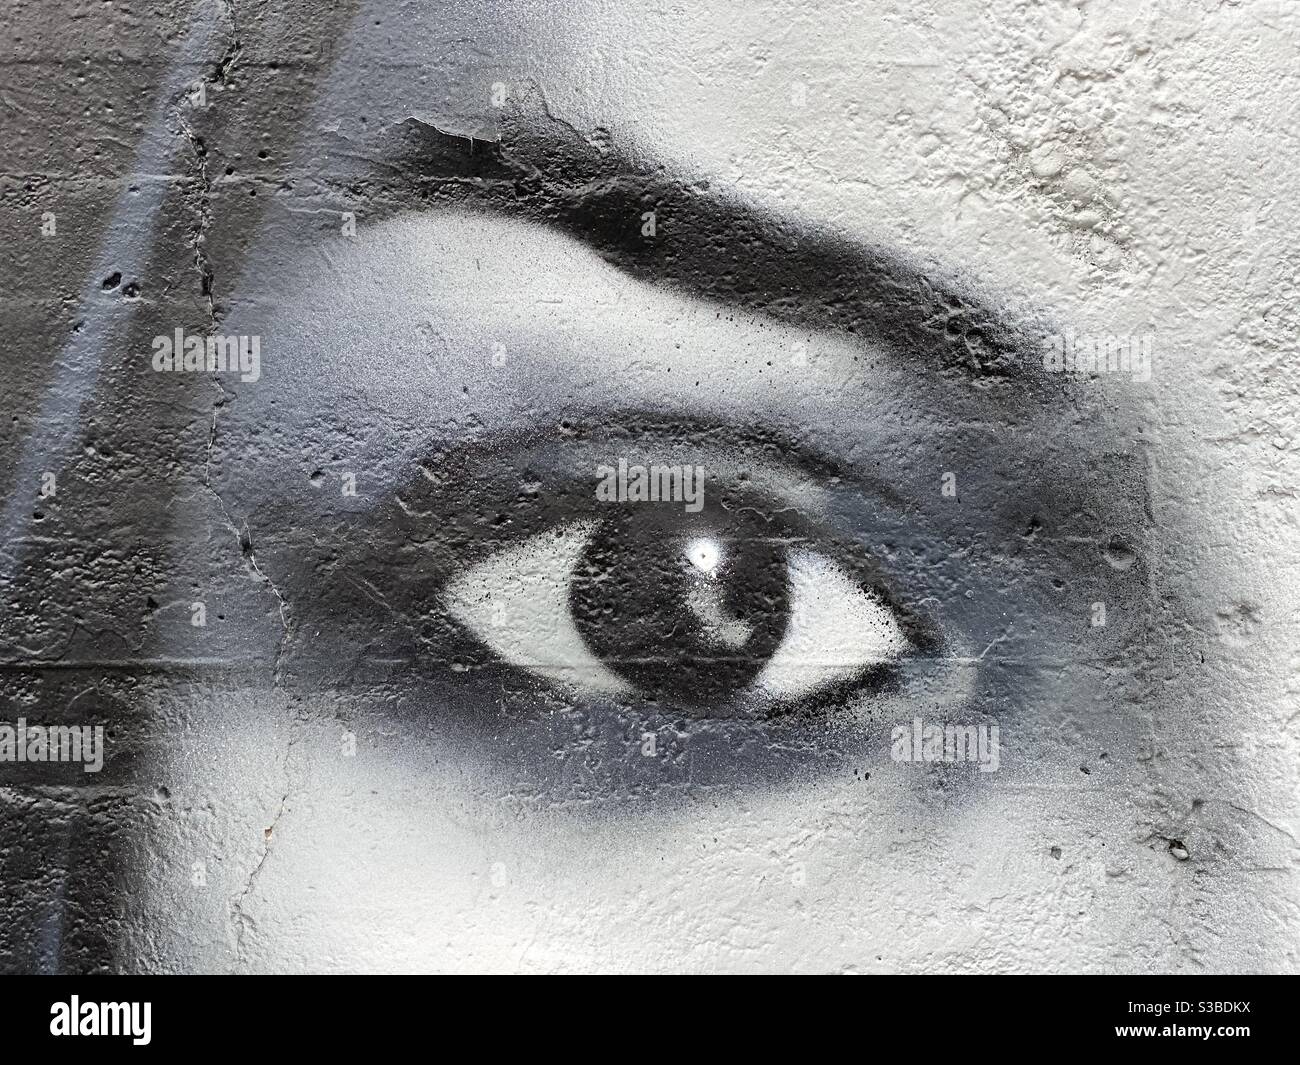 Diseño de ojo de mujer, vista de detalle en una pared de la calle Foto de stock